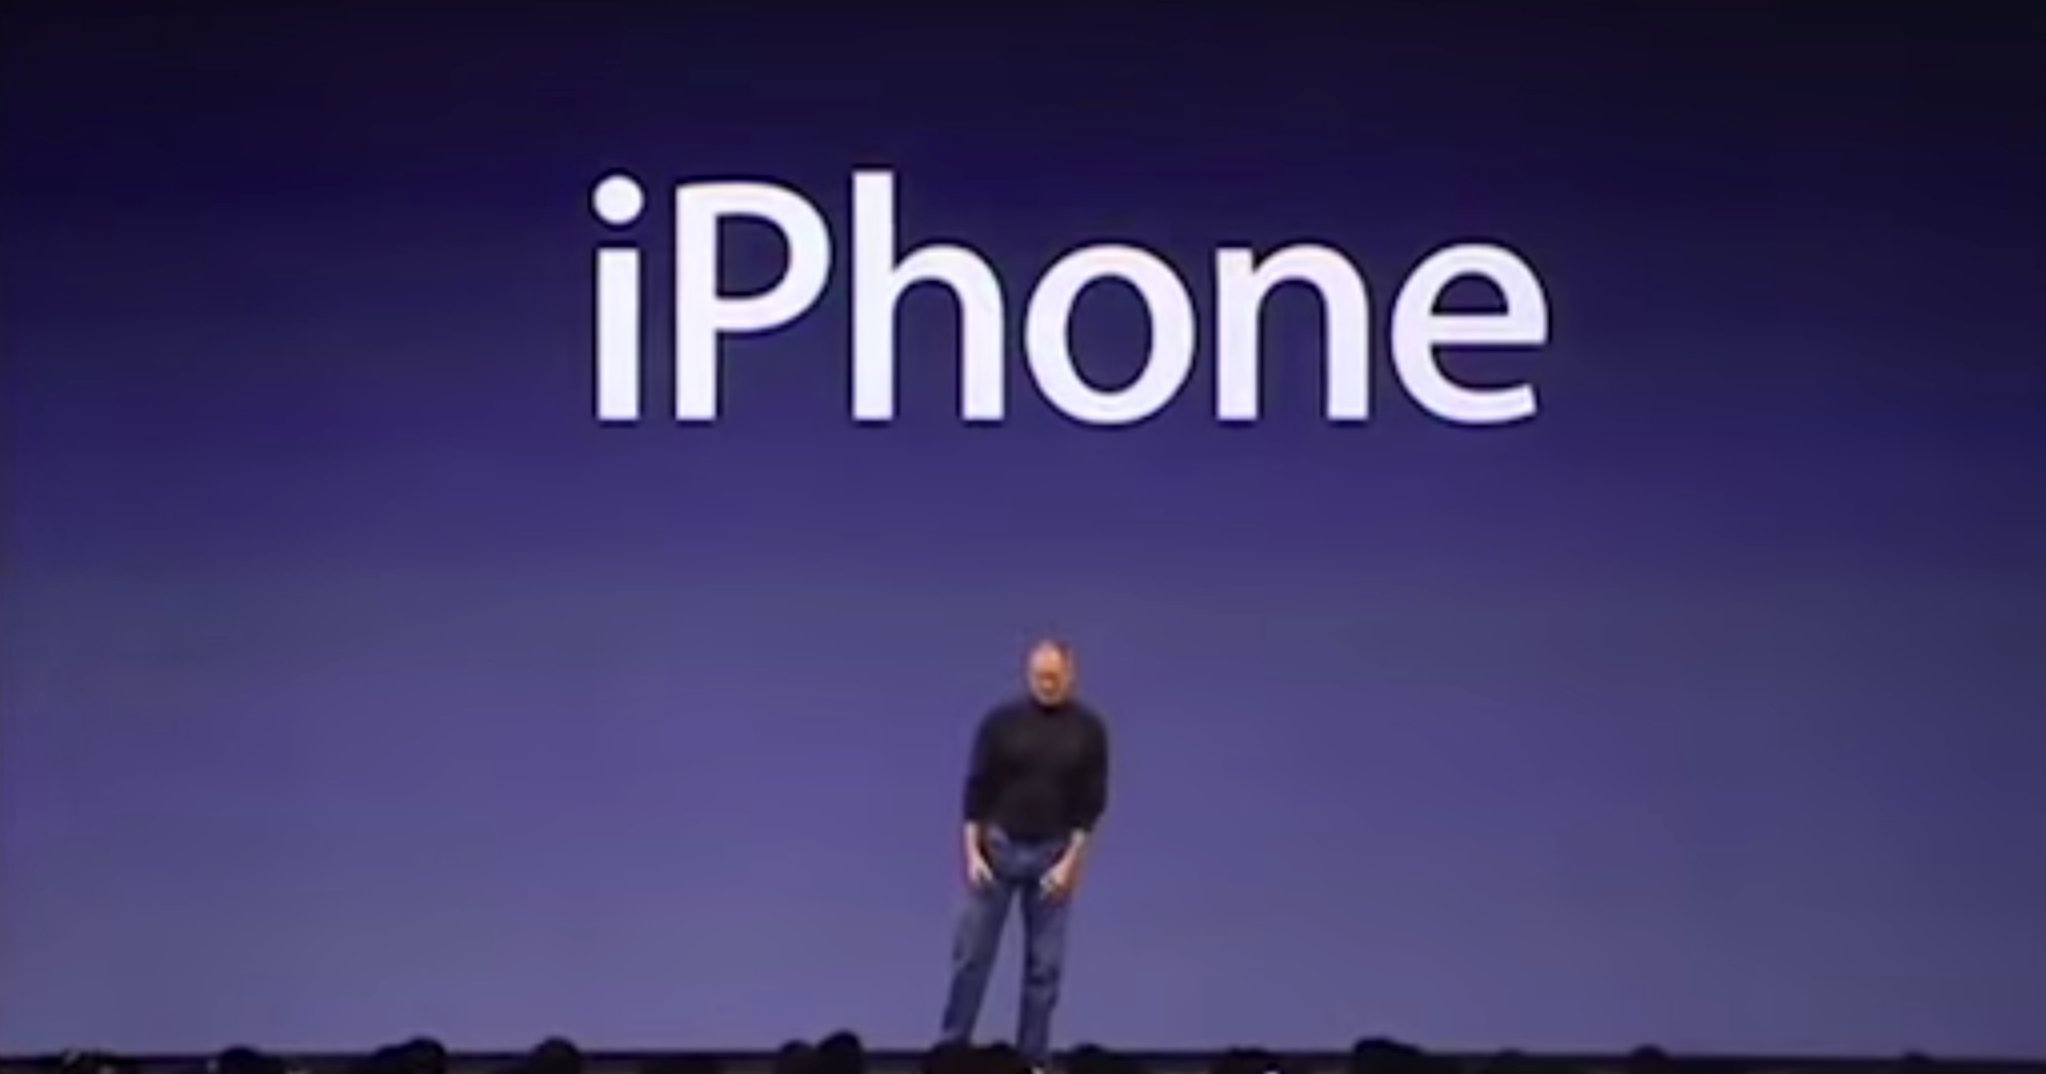 7 Jahre iPhone Geschichte: iPhone OS 1.0 bis iOS 8 im Video 7